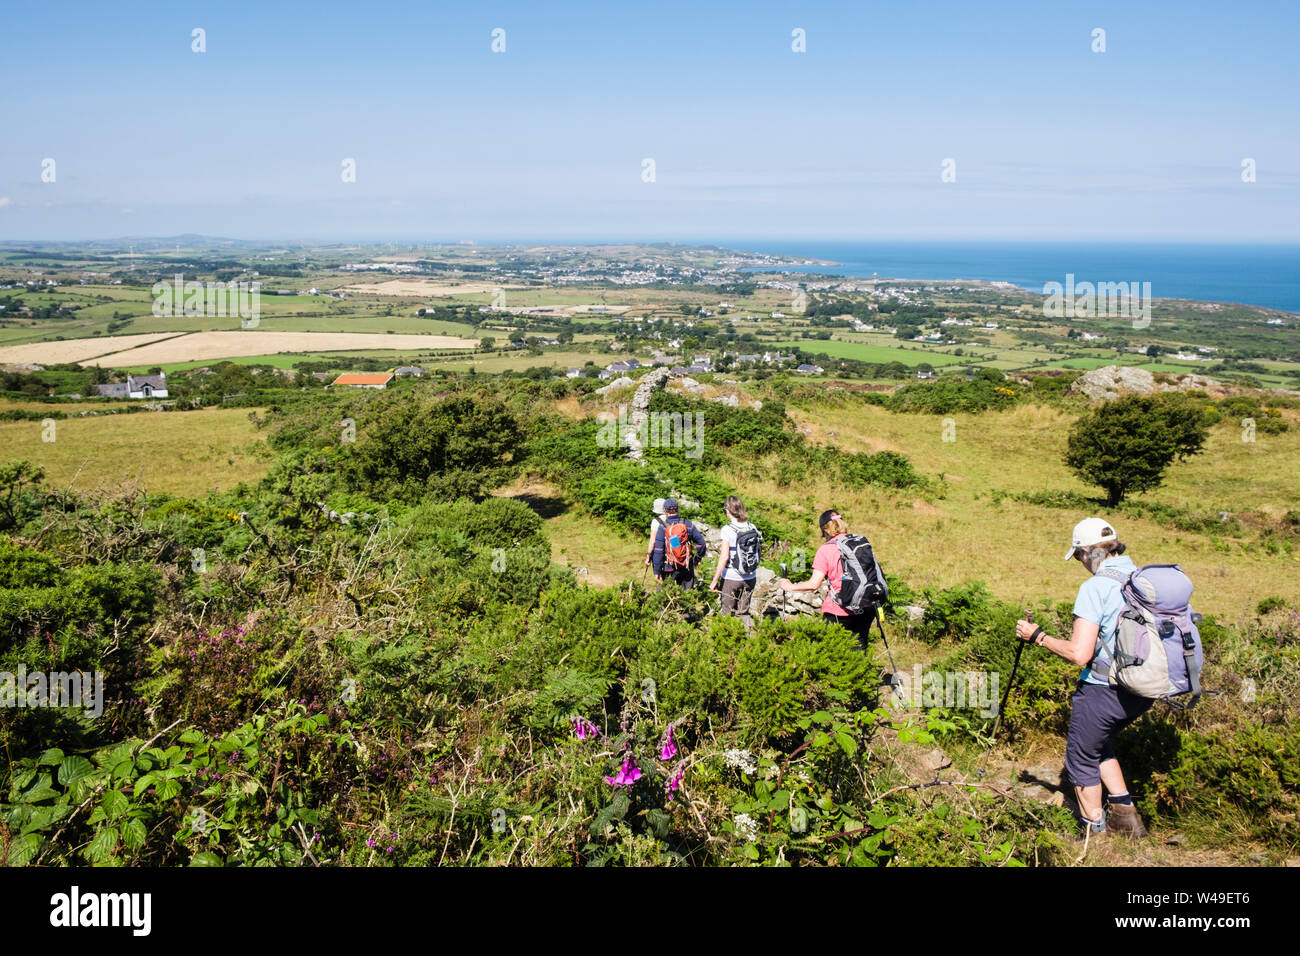 Les randonneurs randonnées sur un sentier sur Mynydd Eilian avec vue de Holyhead sur la côte. Llaneilian, Isle of Anglesey, au nord du Pays de Galles, Royaume-Uni, Angleterre Banque D'Images